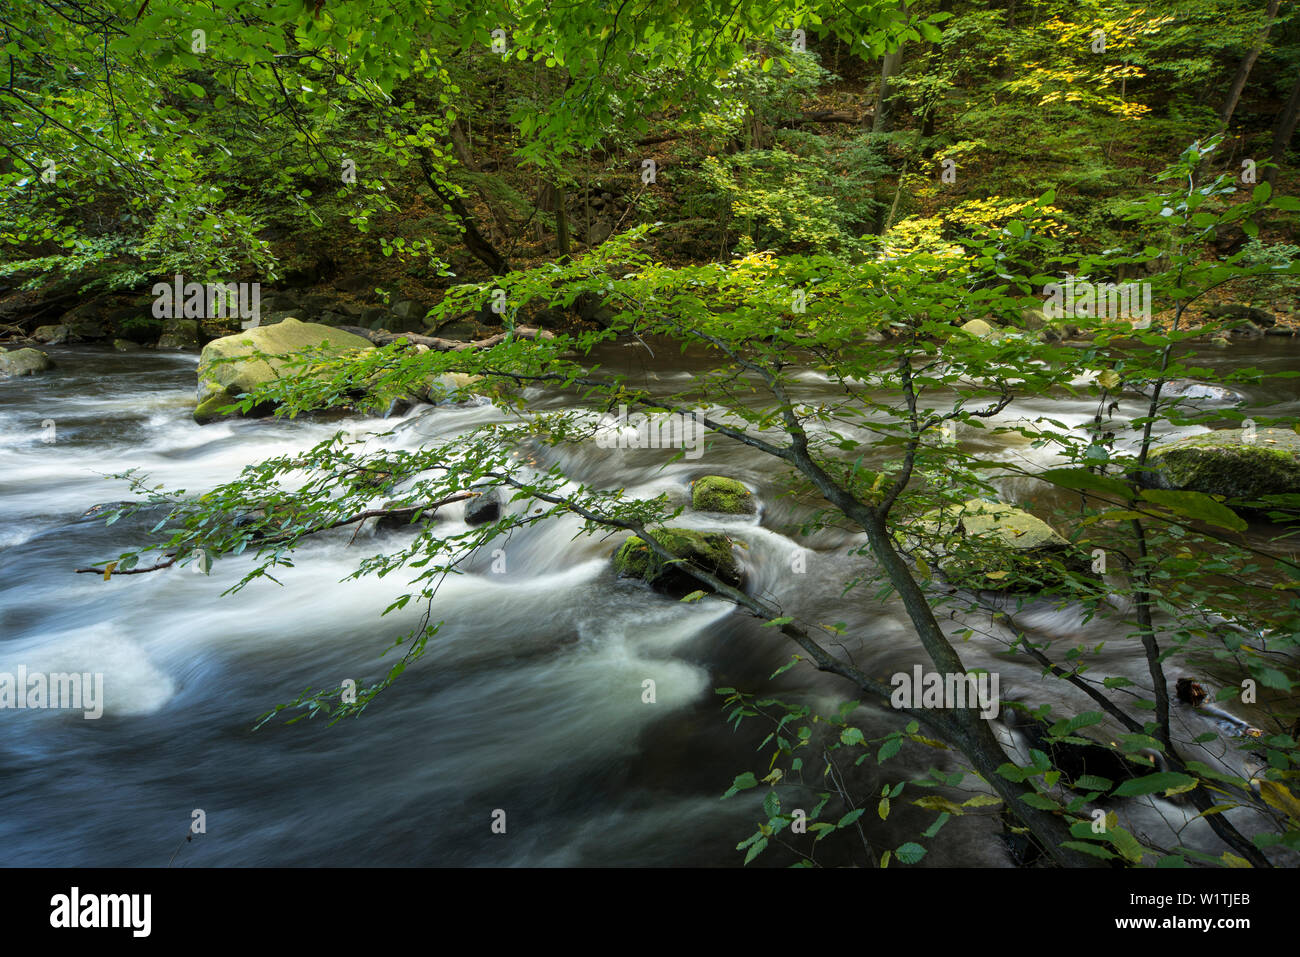 River Bode, vallée de Bode, Thale, District de Harz, Parc National de Harz, Saxe-Anhalt, Allemagne, Europe Banque D'Images